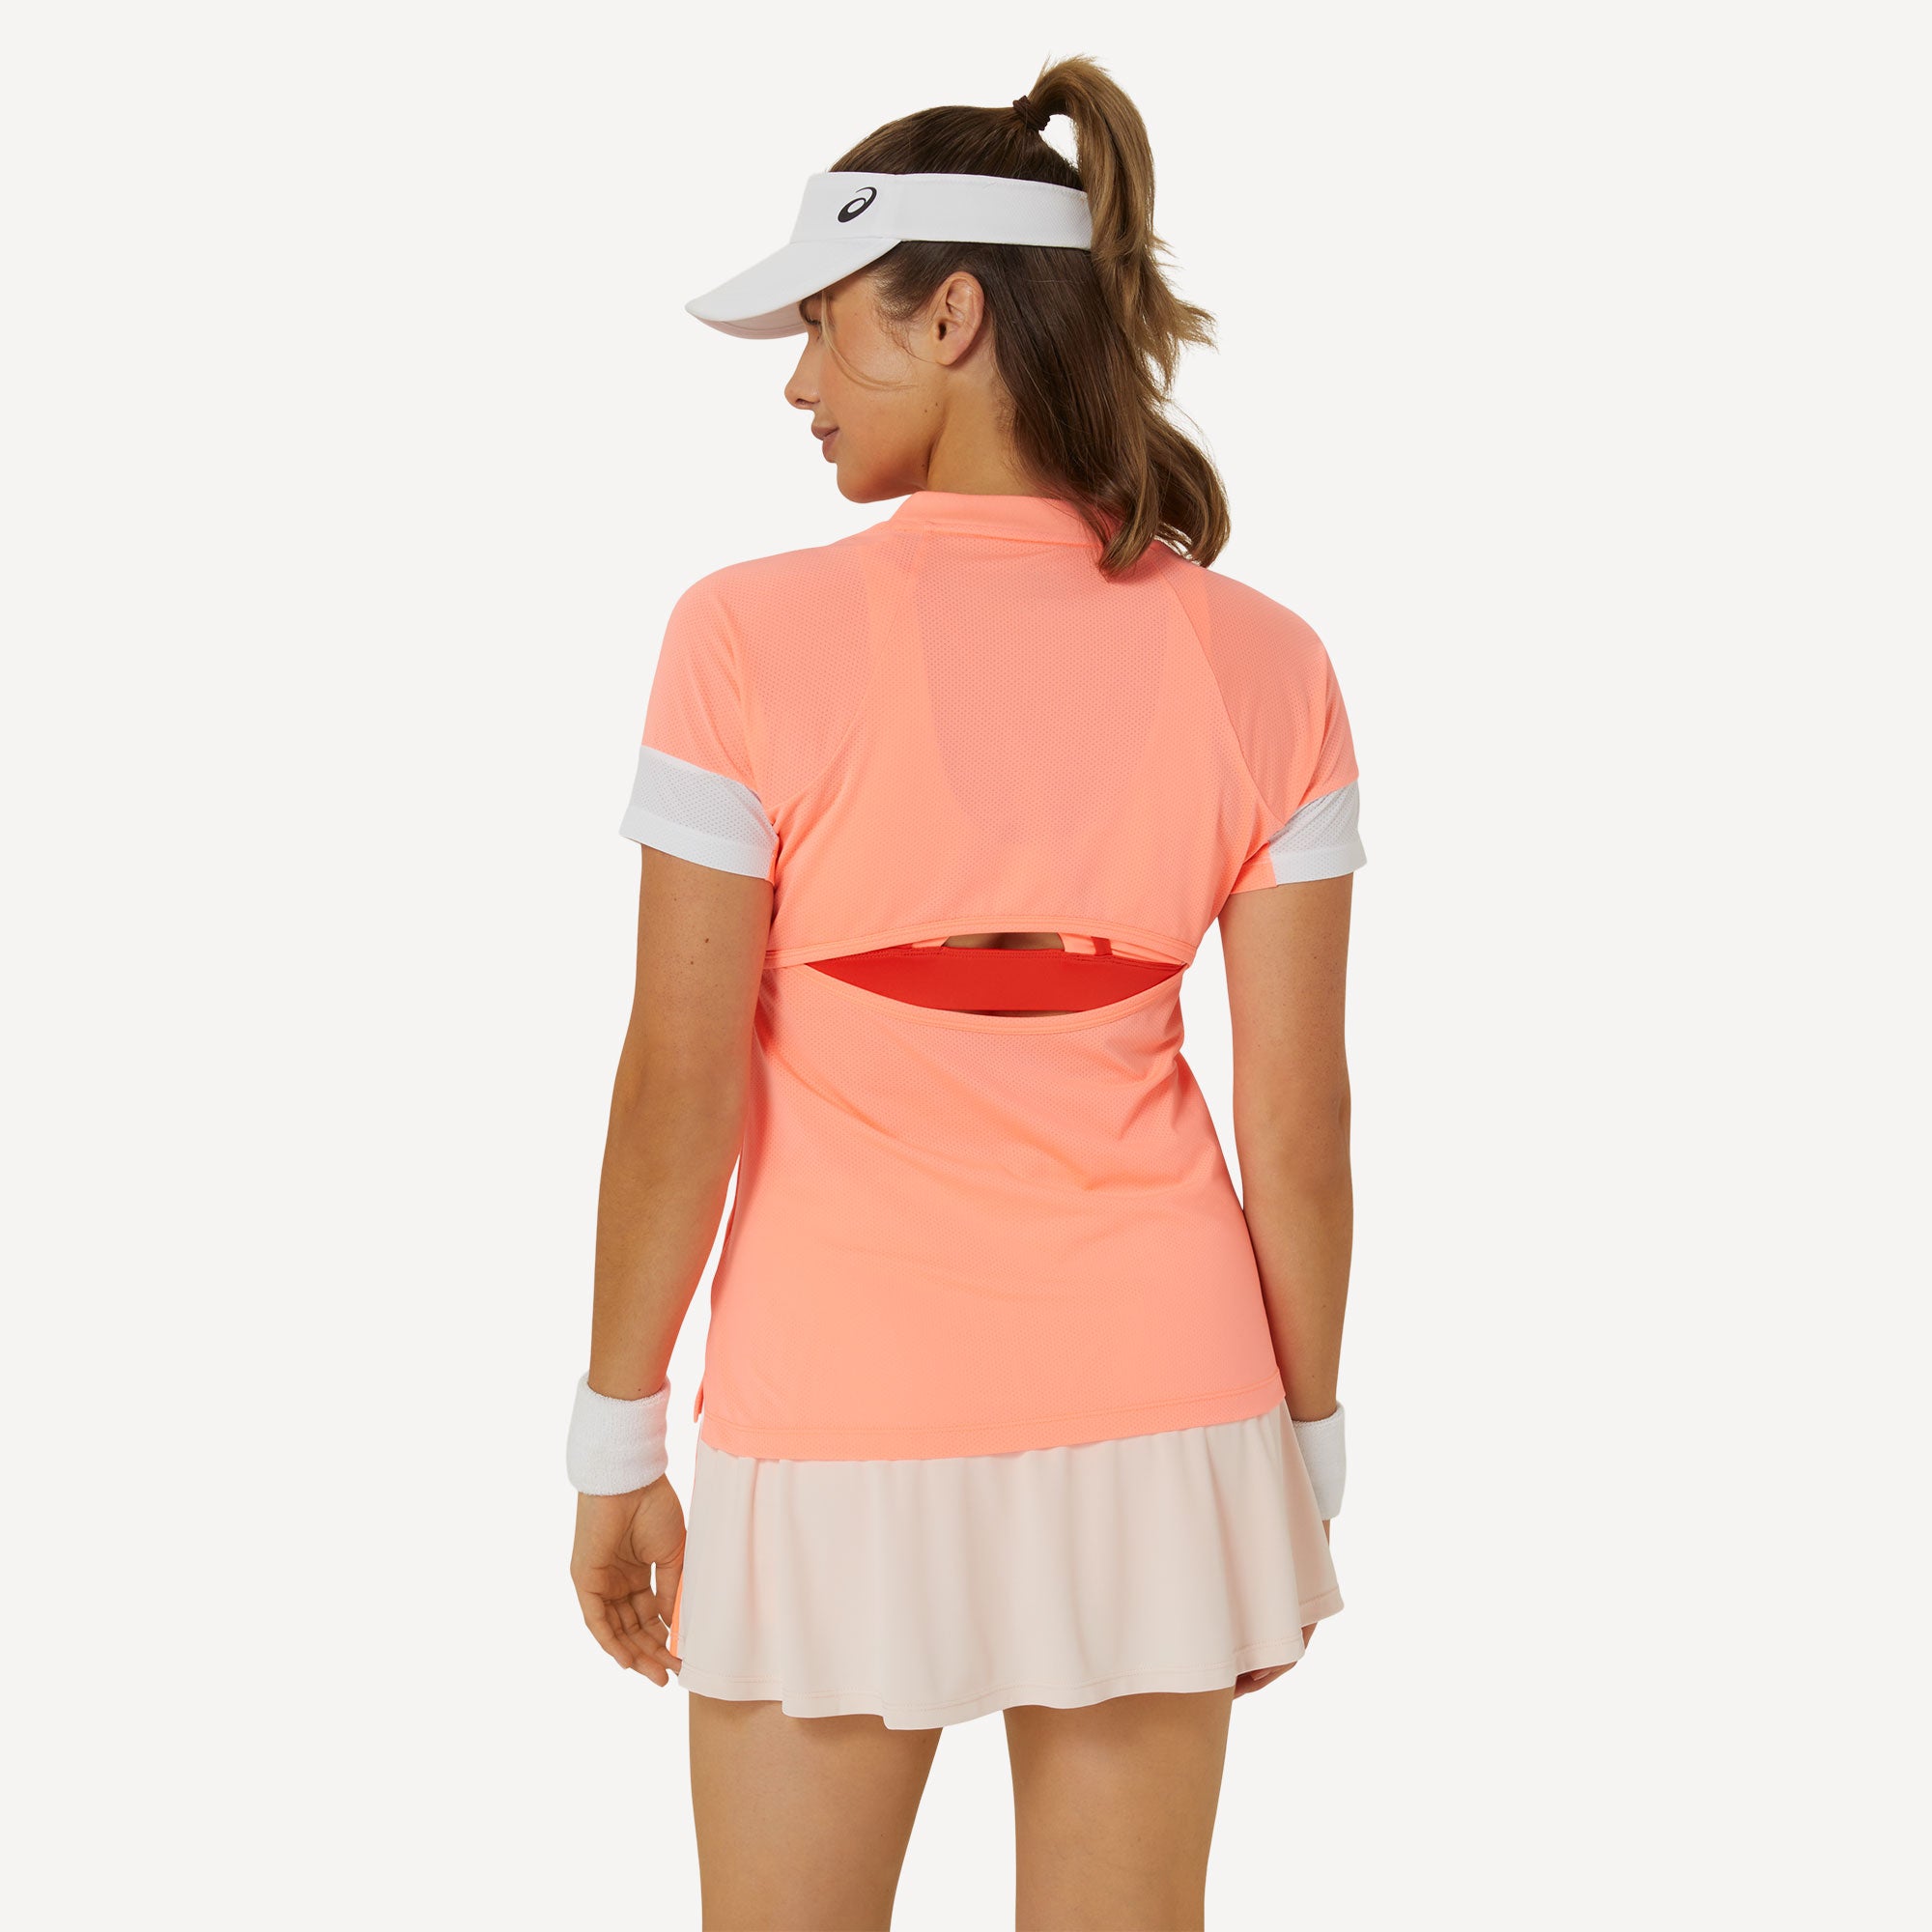 ASICS Game Women's Tennis Shirt - Orange (2)